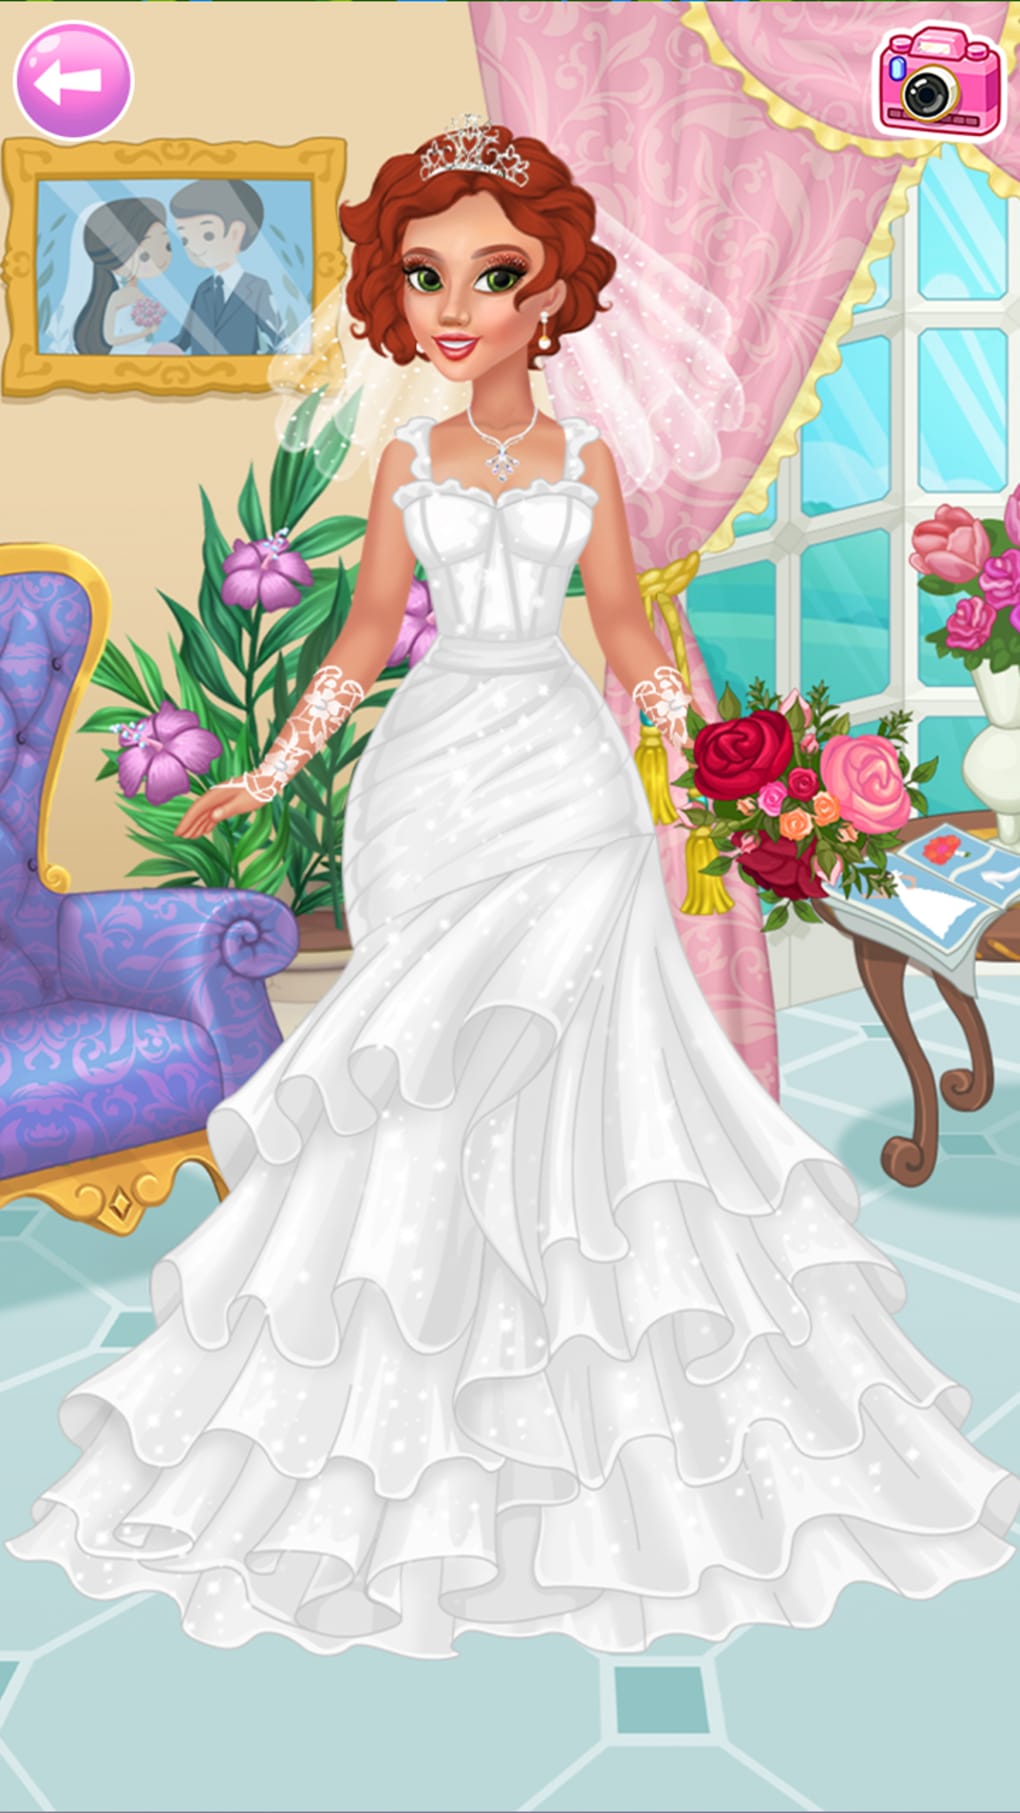 Casamento Jogo de Vestir Noiva APK (Android Game) - Baixar Grátis